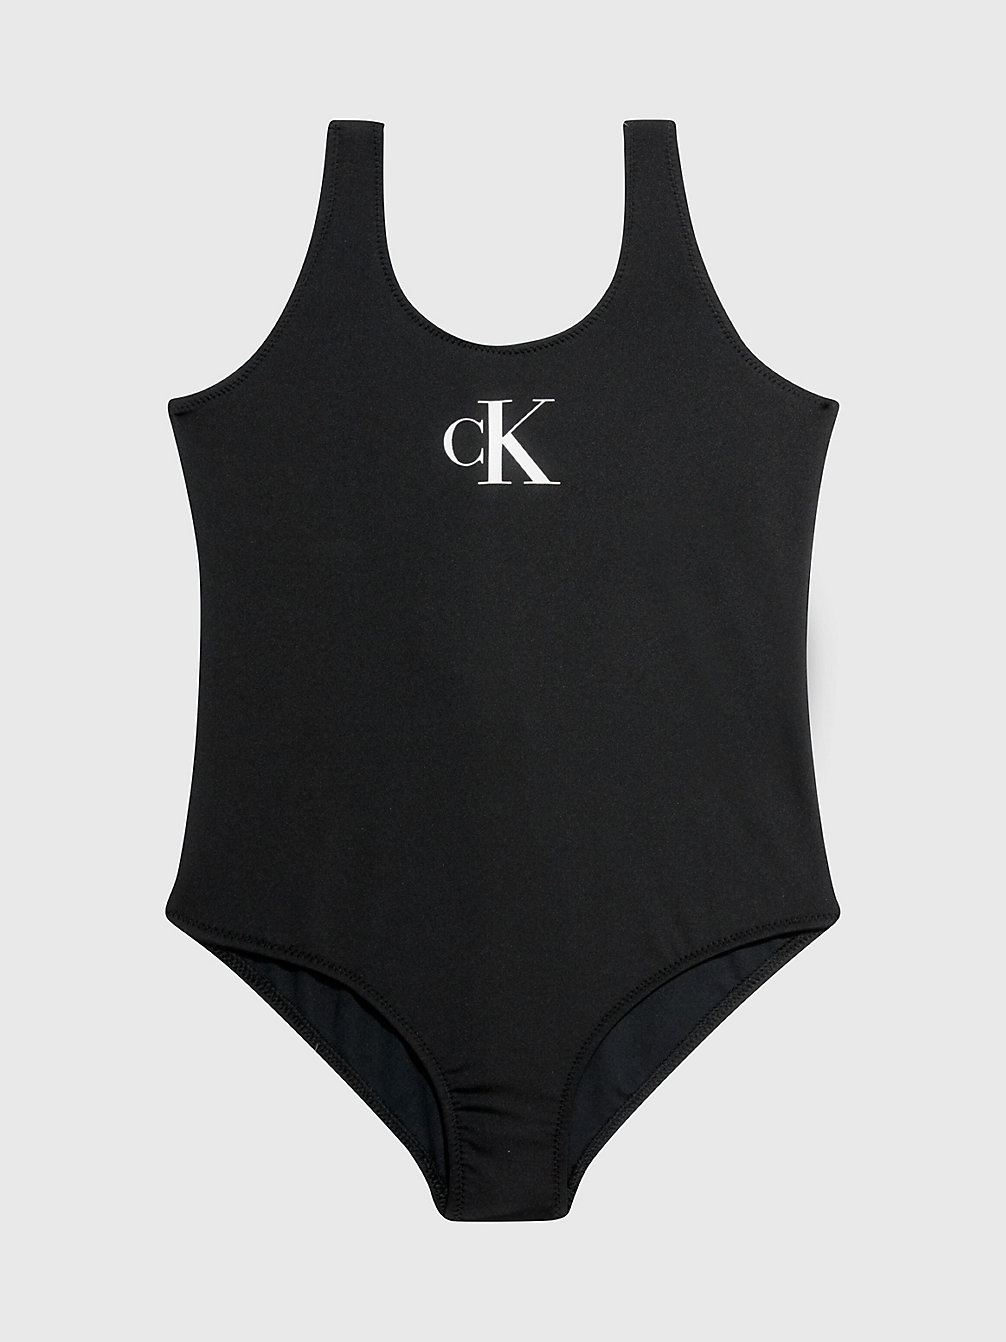 PVH BLACK Badeanzug Für Mädchen - CK Monogram undefined girls Calvin Klein